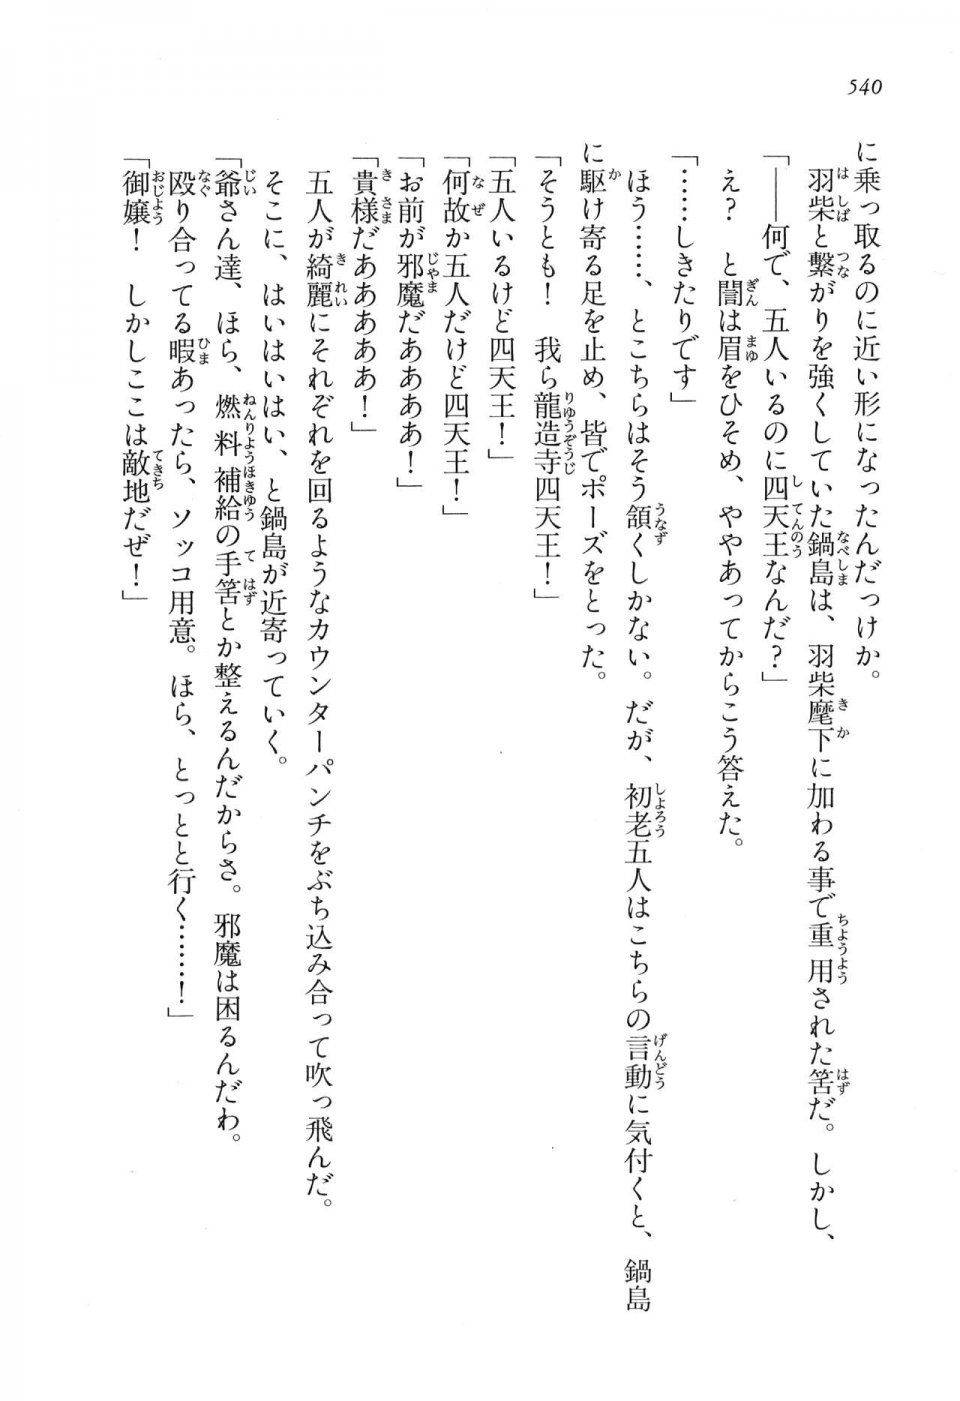 Kyoukai Senjou no Horizon LN Vol 16(7A) - Photo #540